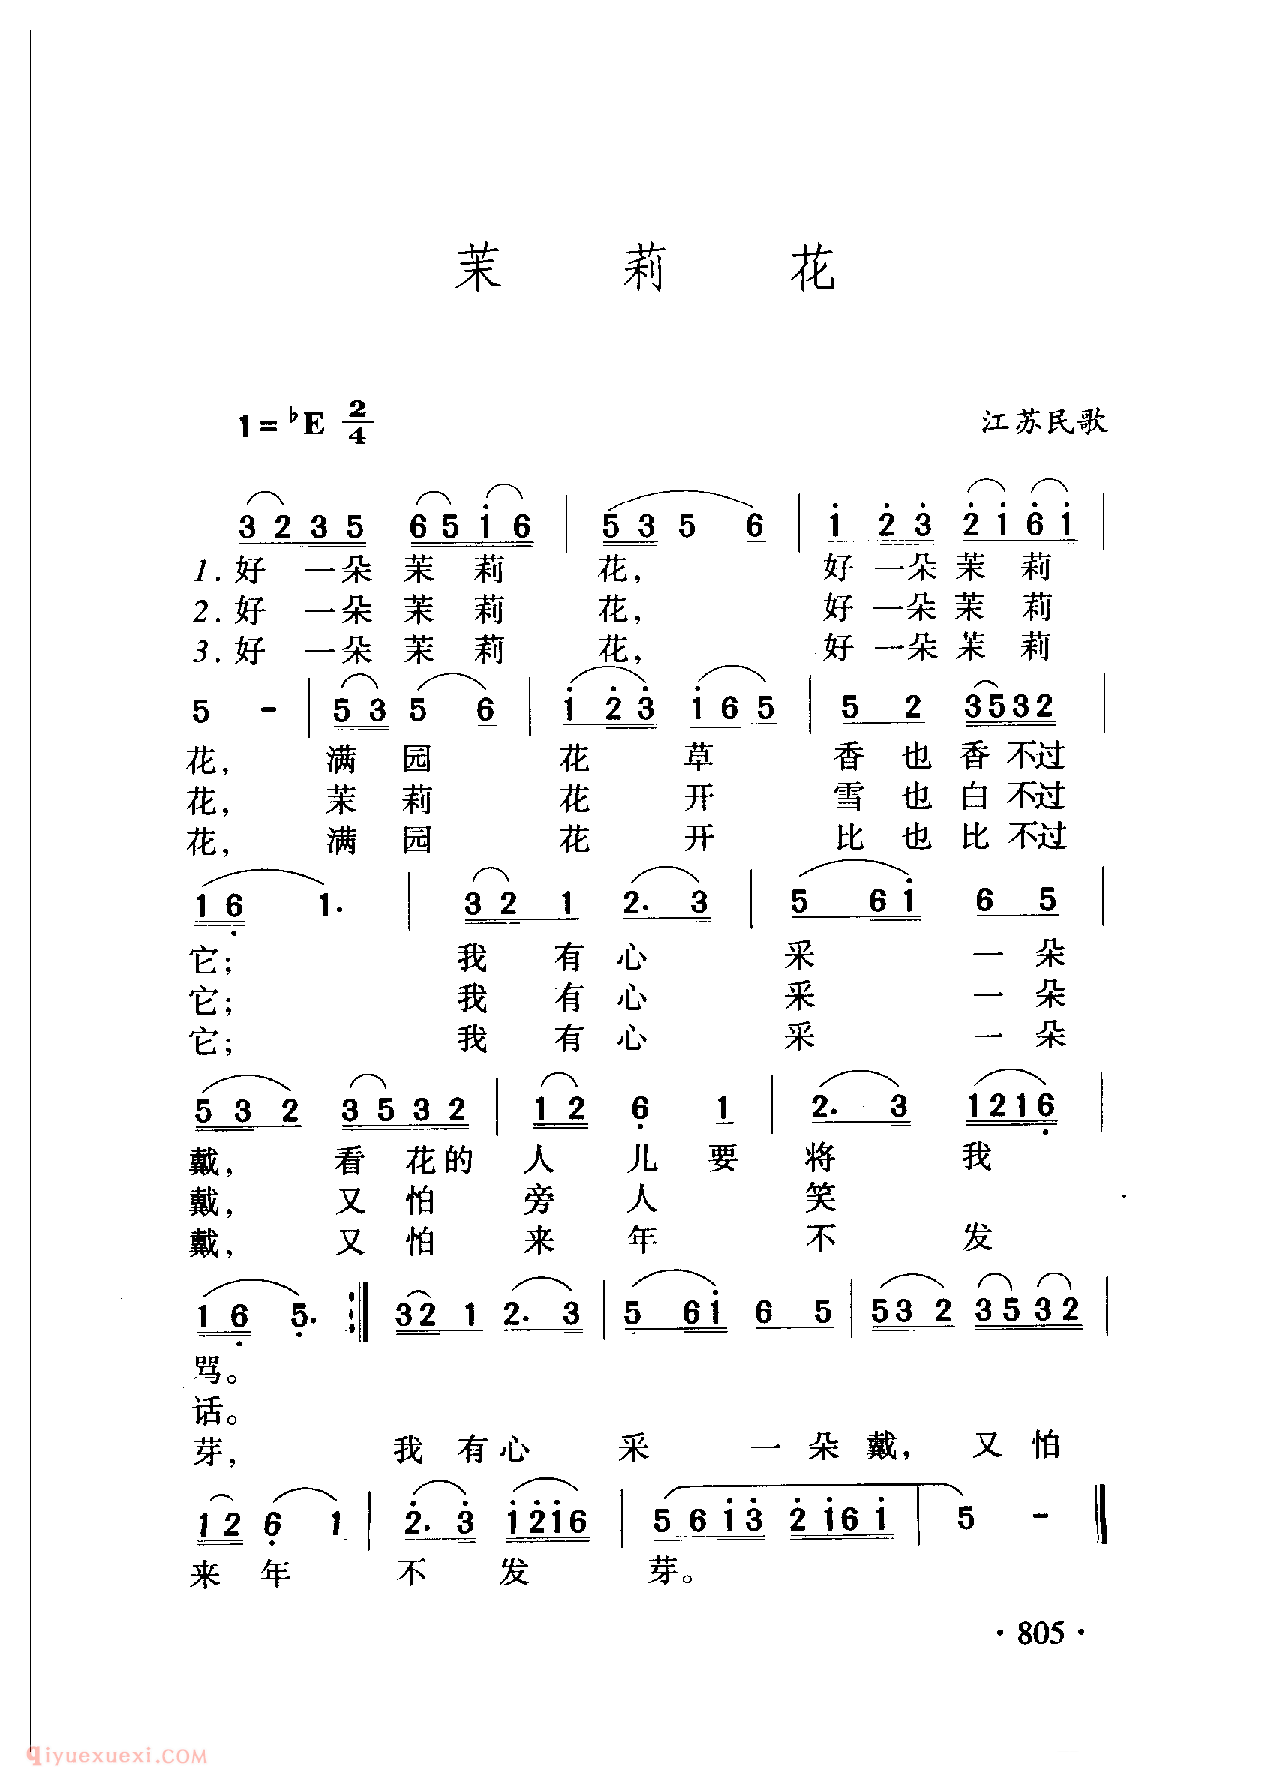 中国名歌[茉莉花]乐谱